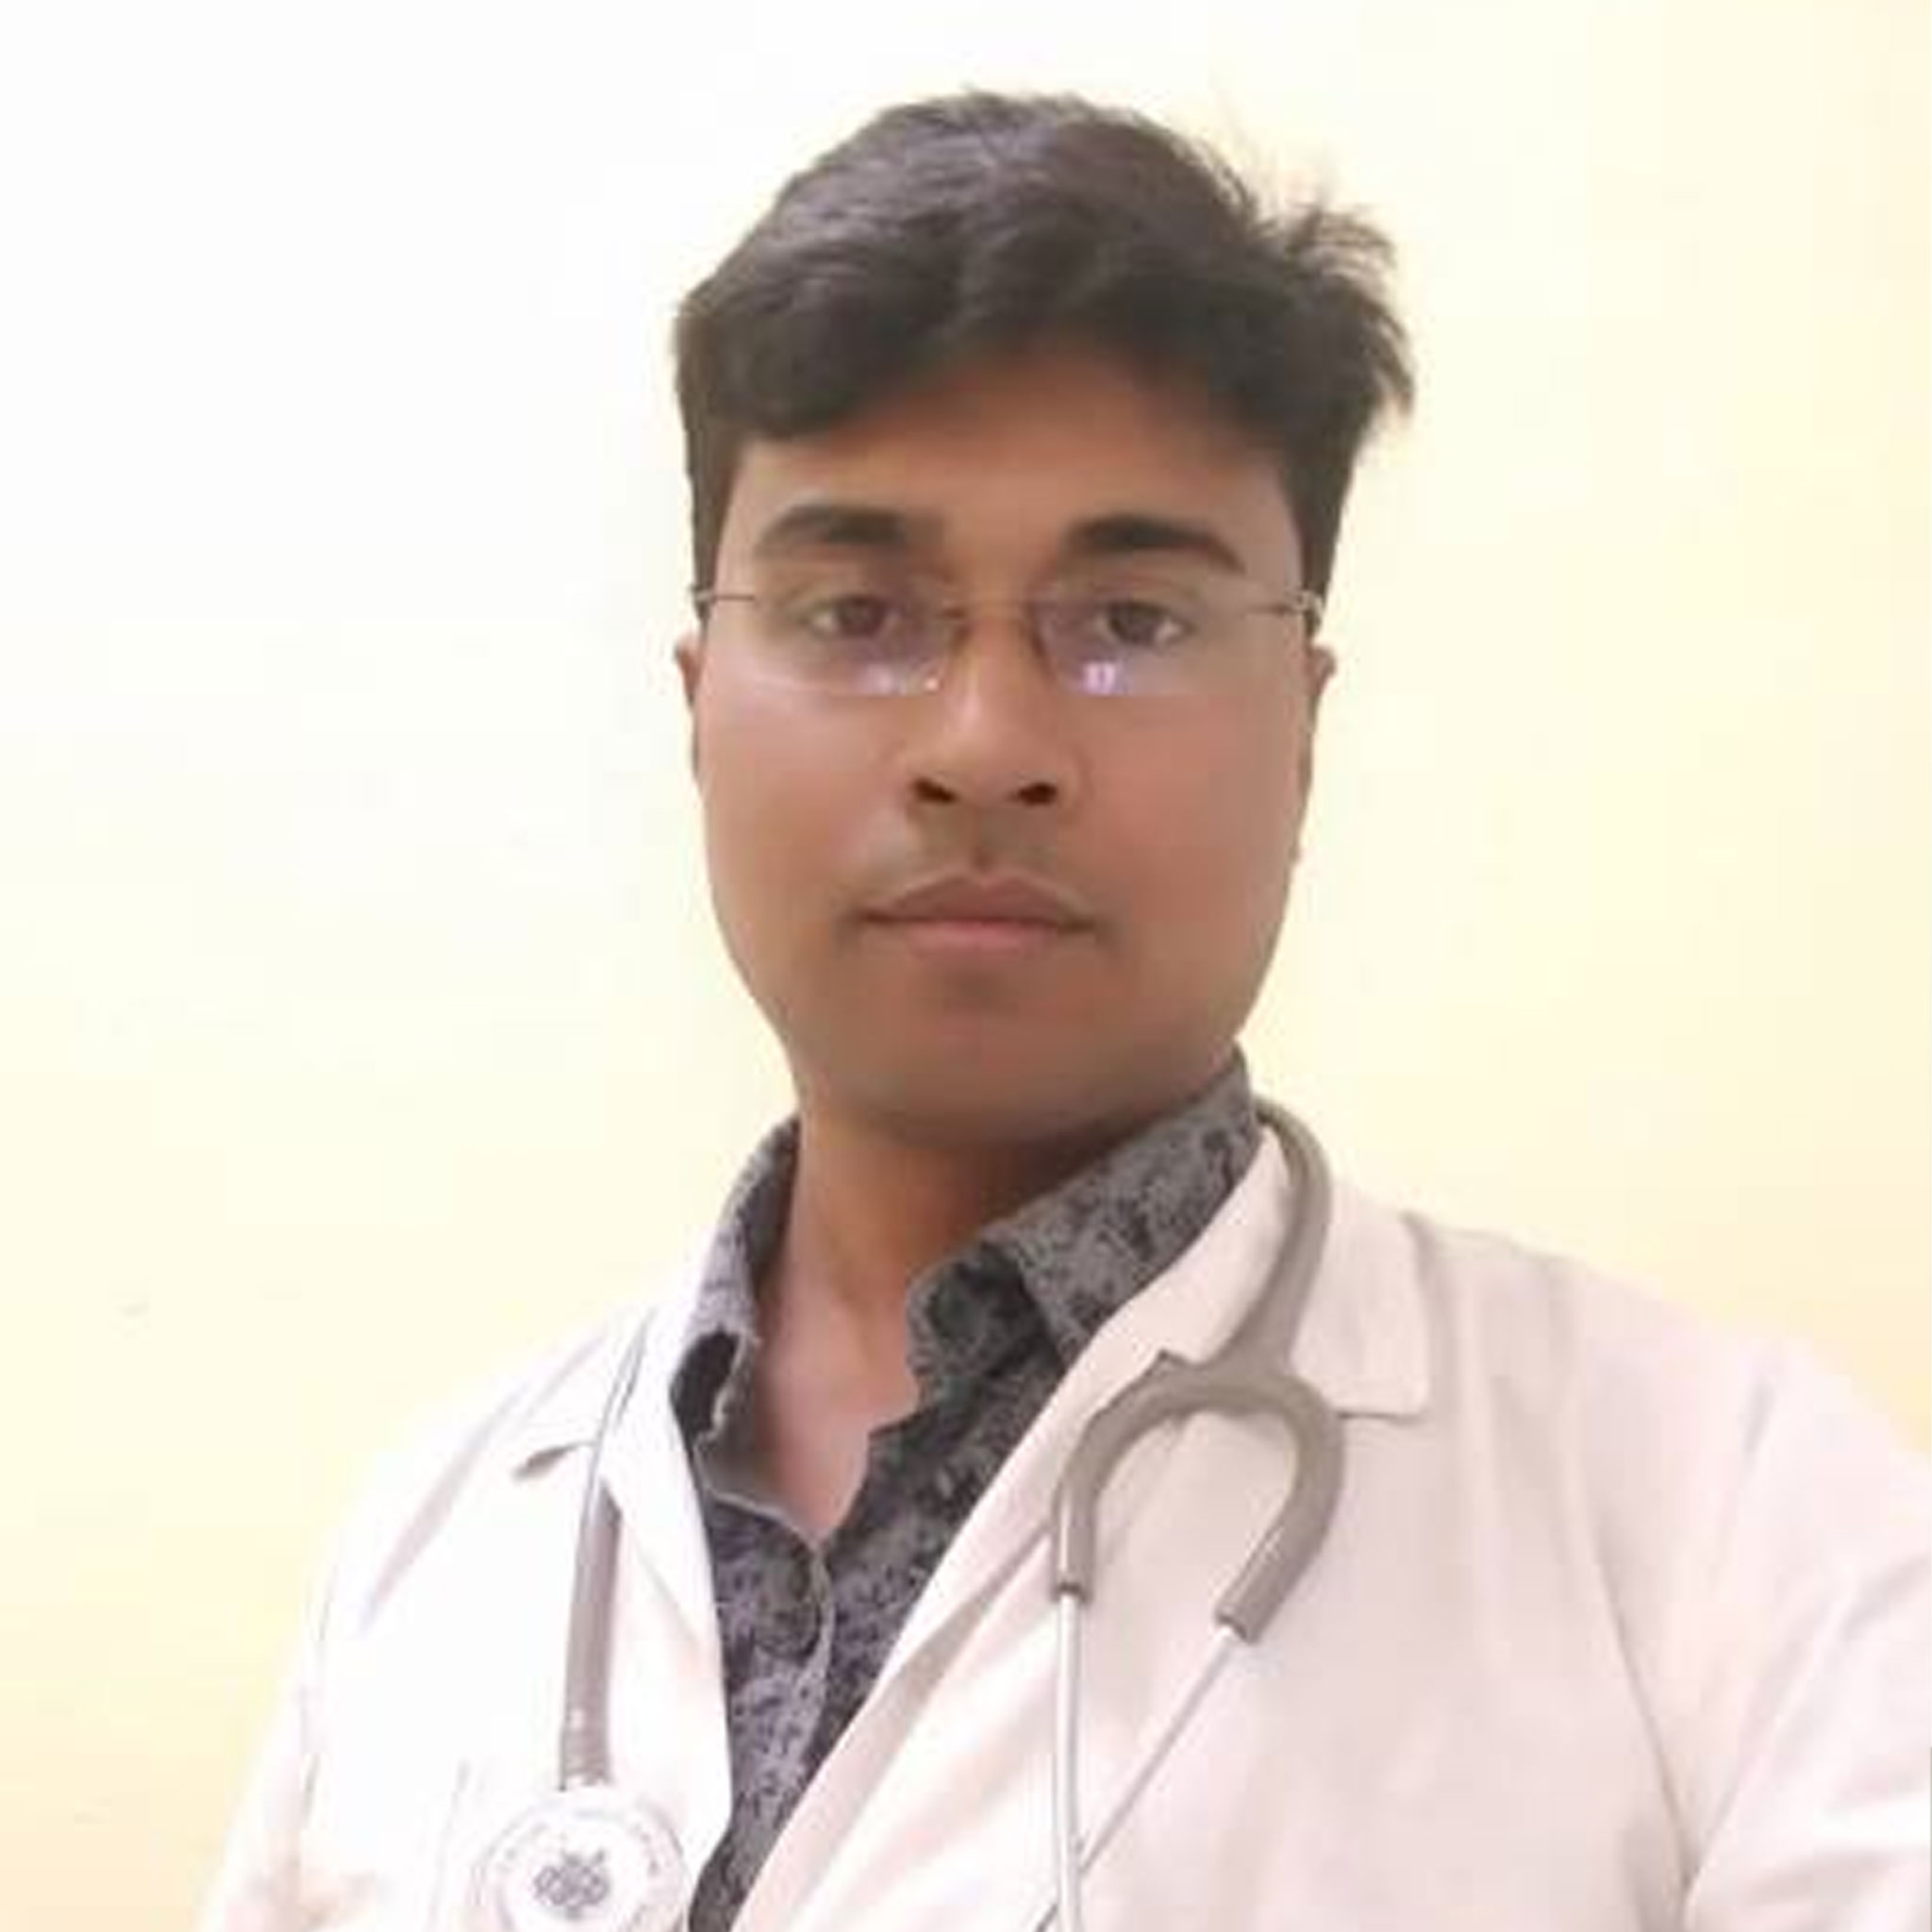 Dr. Nikhil